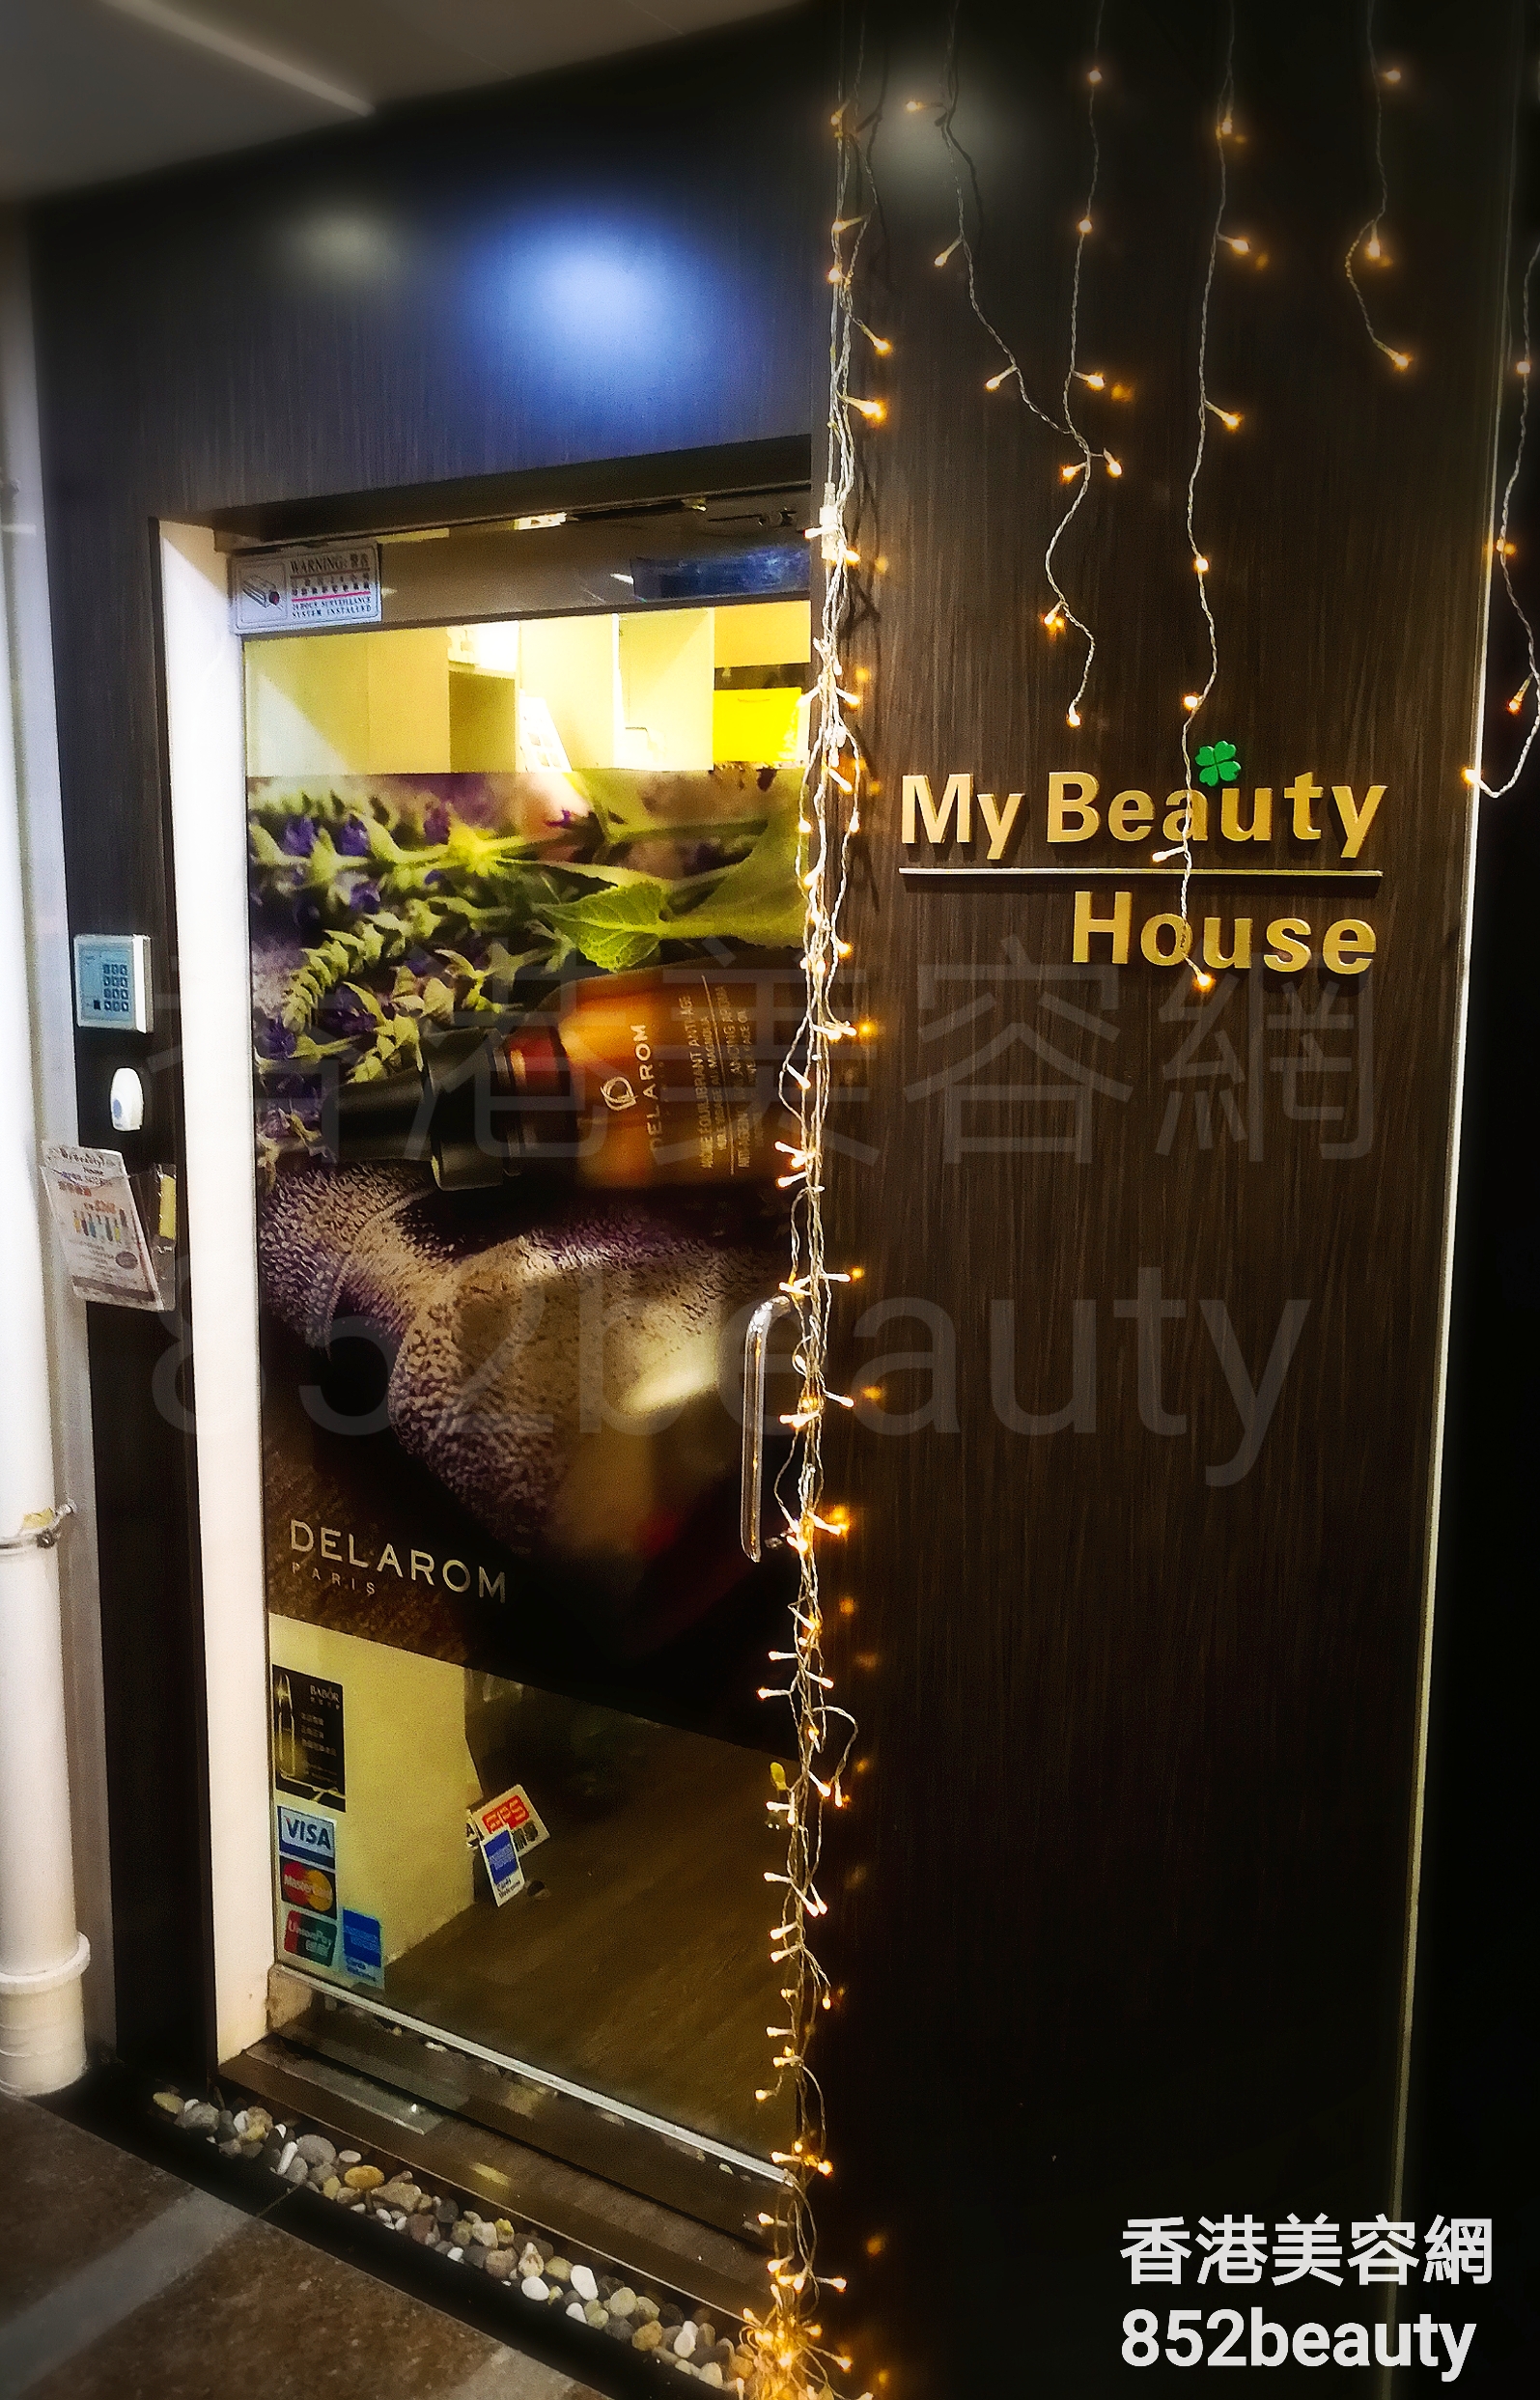 醫學美容: My Beauty House